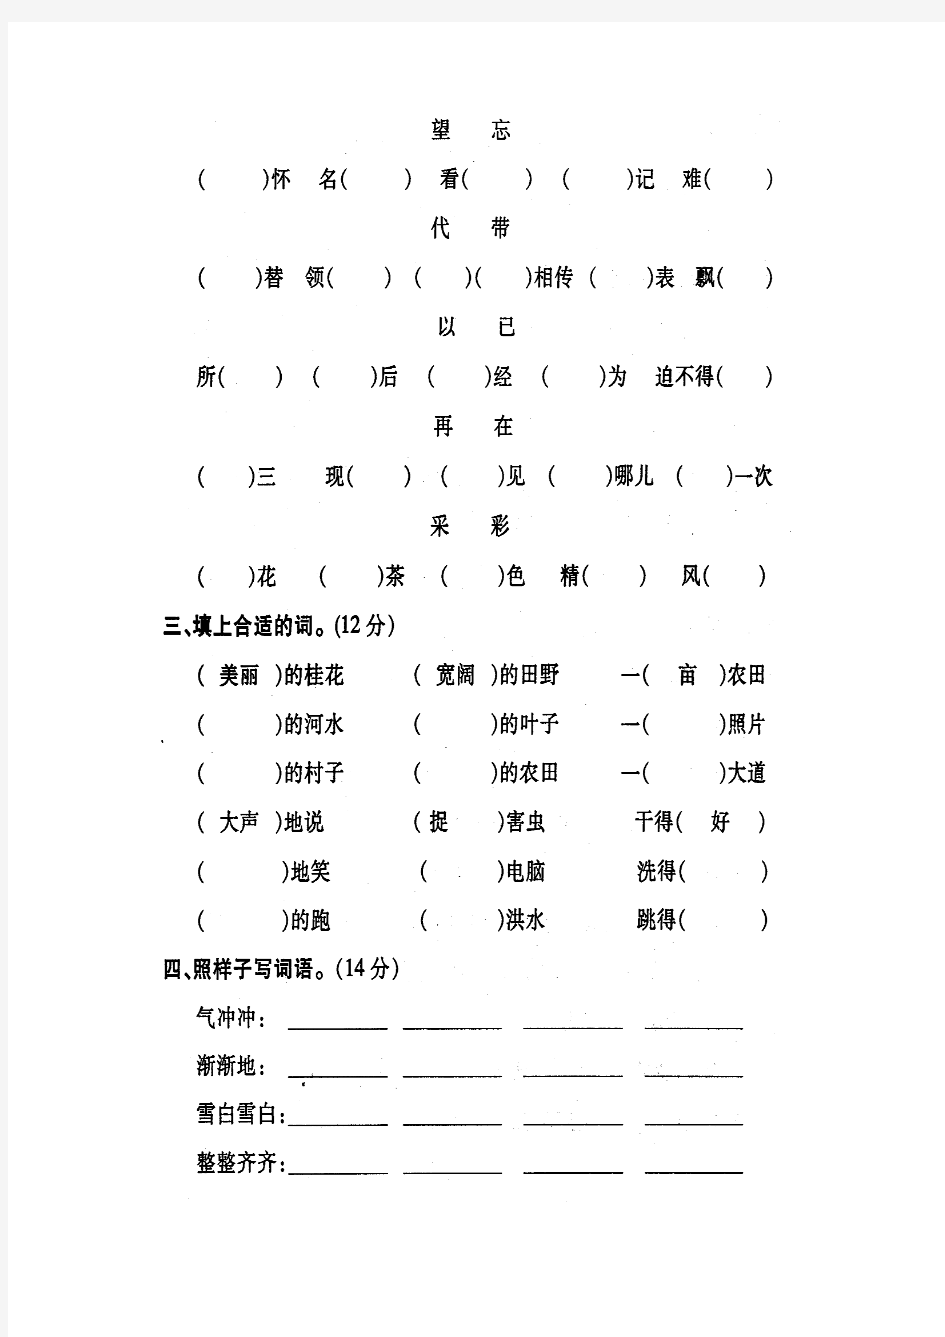 苏教版 二年级语文(上) 期末归类复习系统试卷二